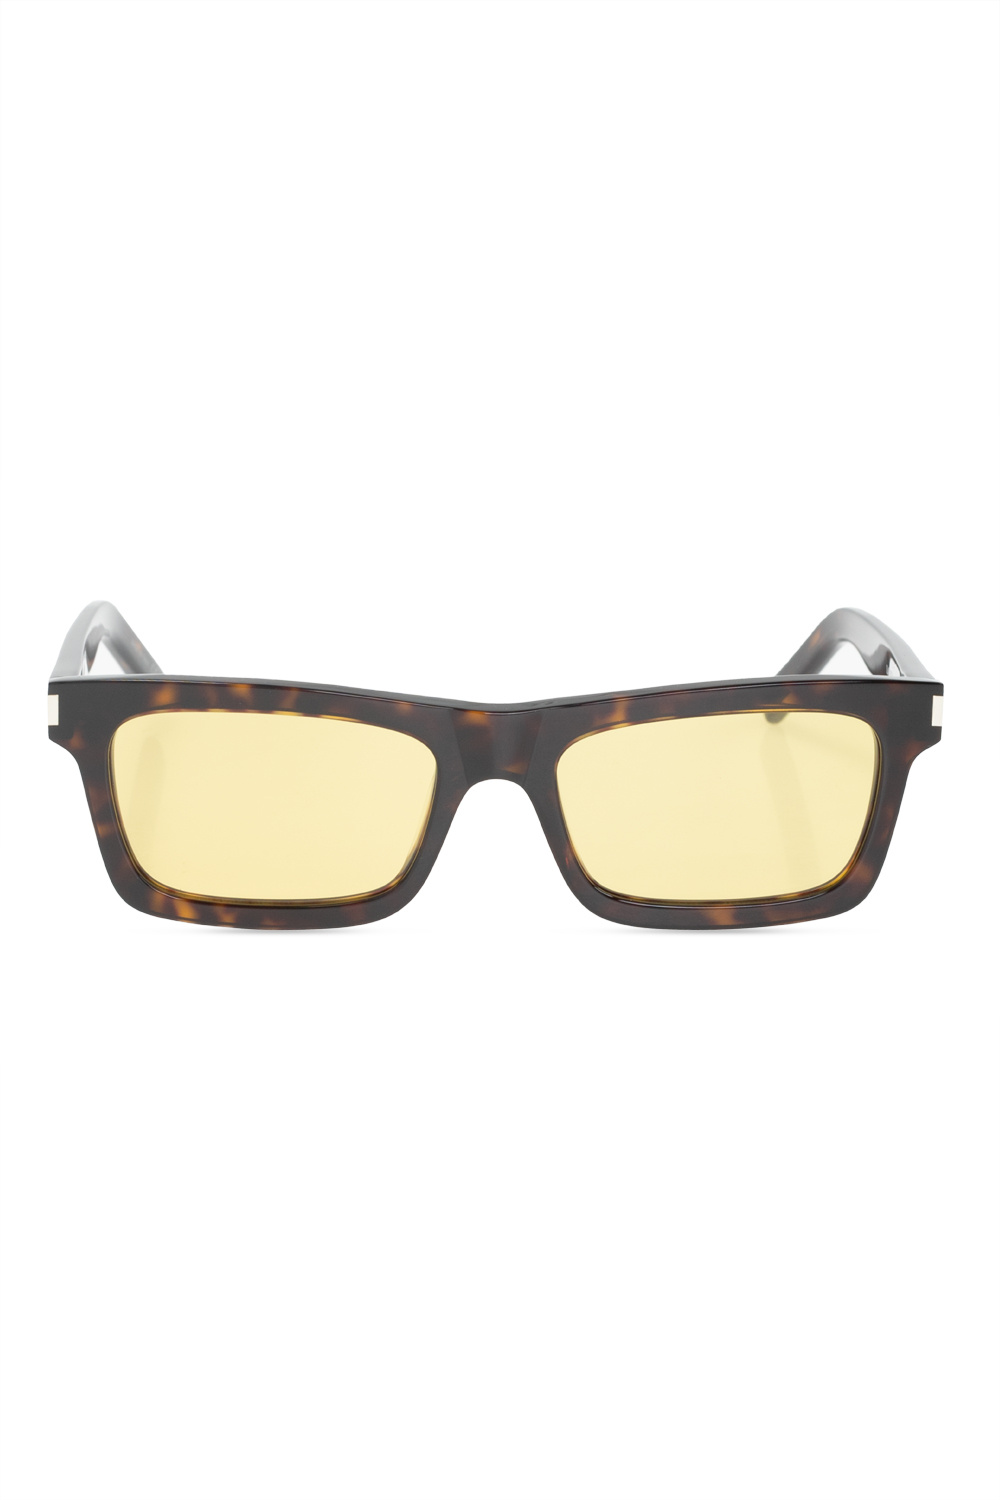 Saint Laurent Sunglasses with case